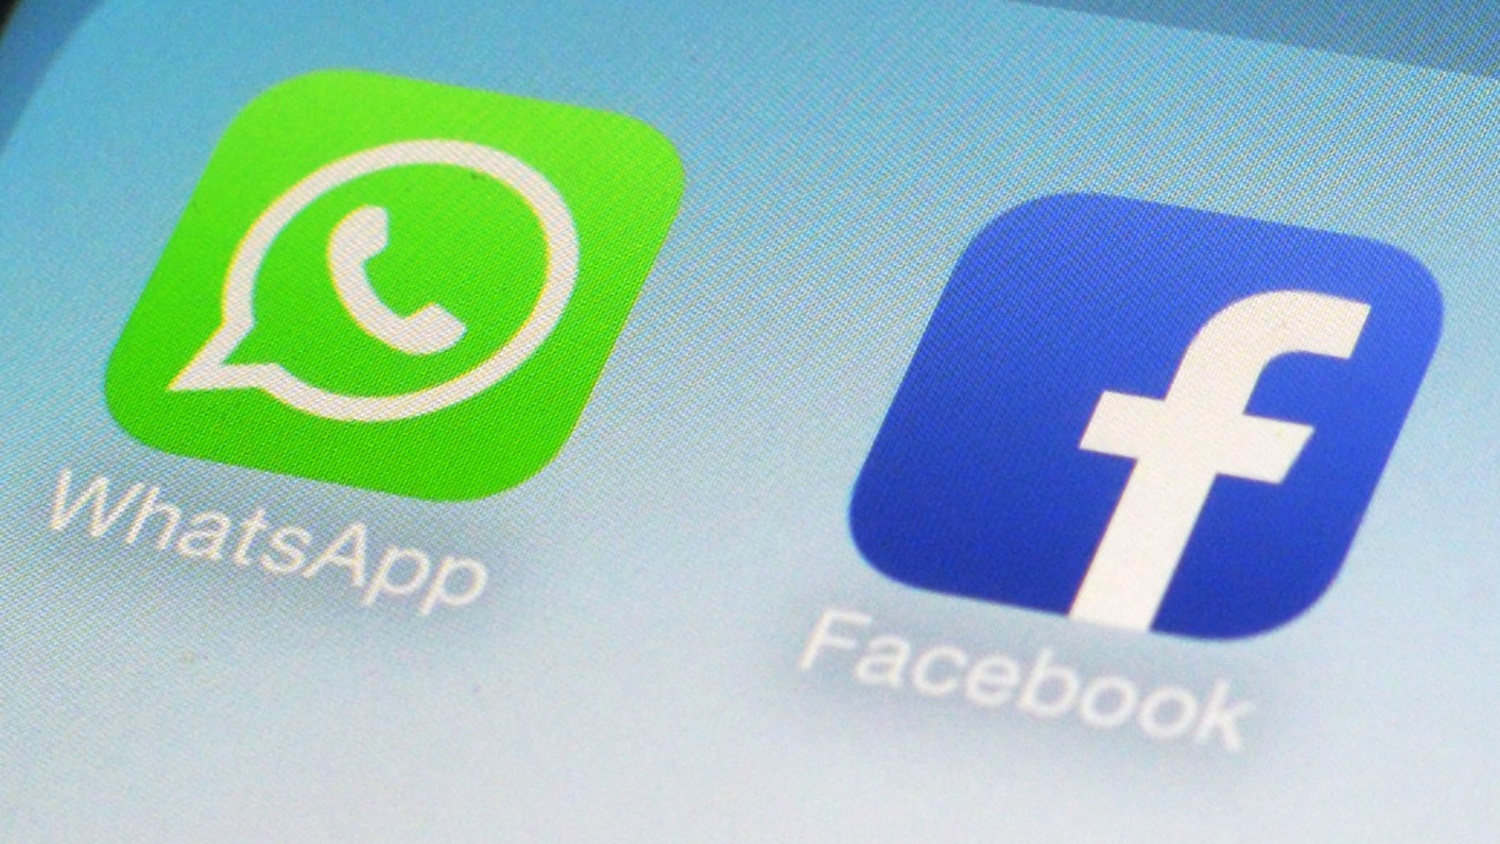 WhatsApp começa a compartilhar informações com Facebook - Reclame Aqui  Notícias